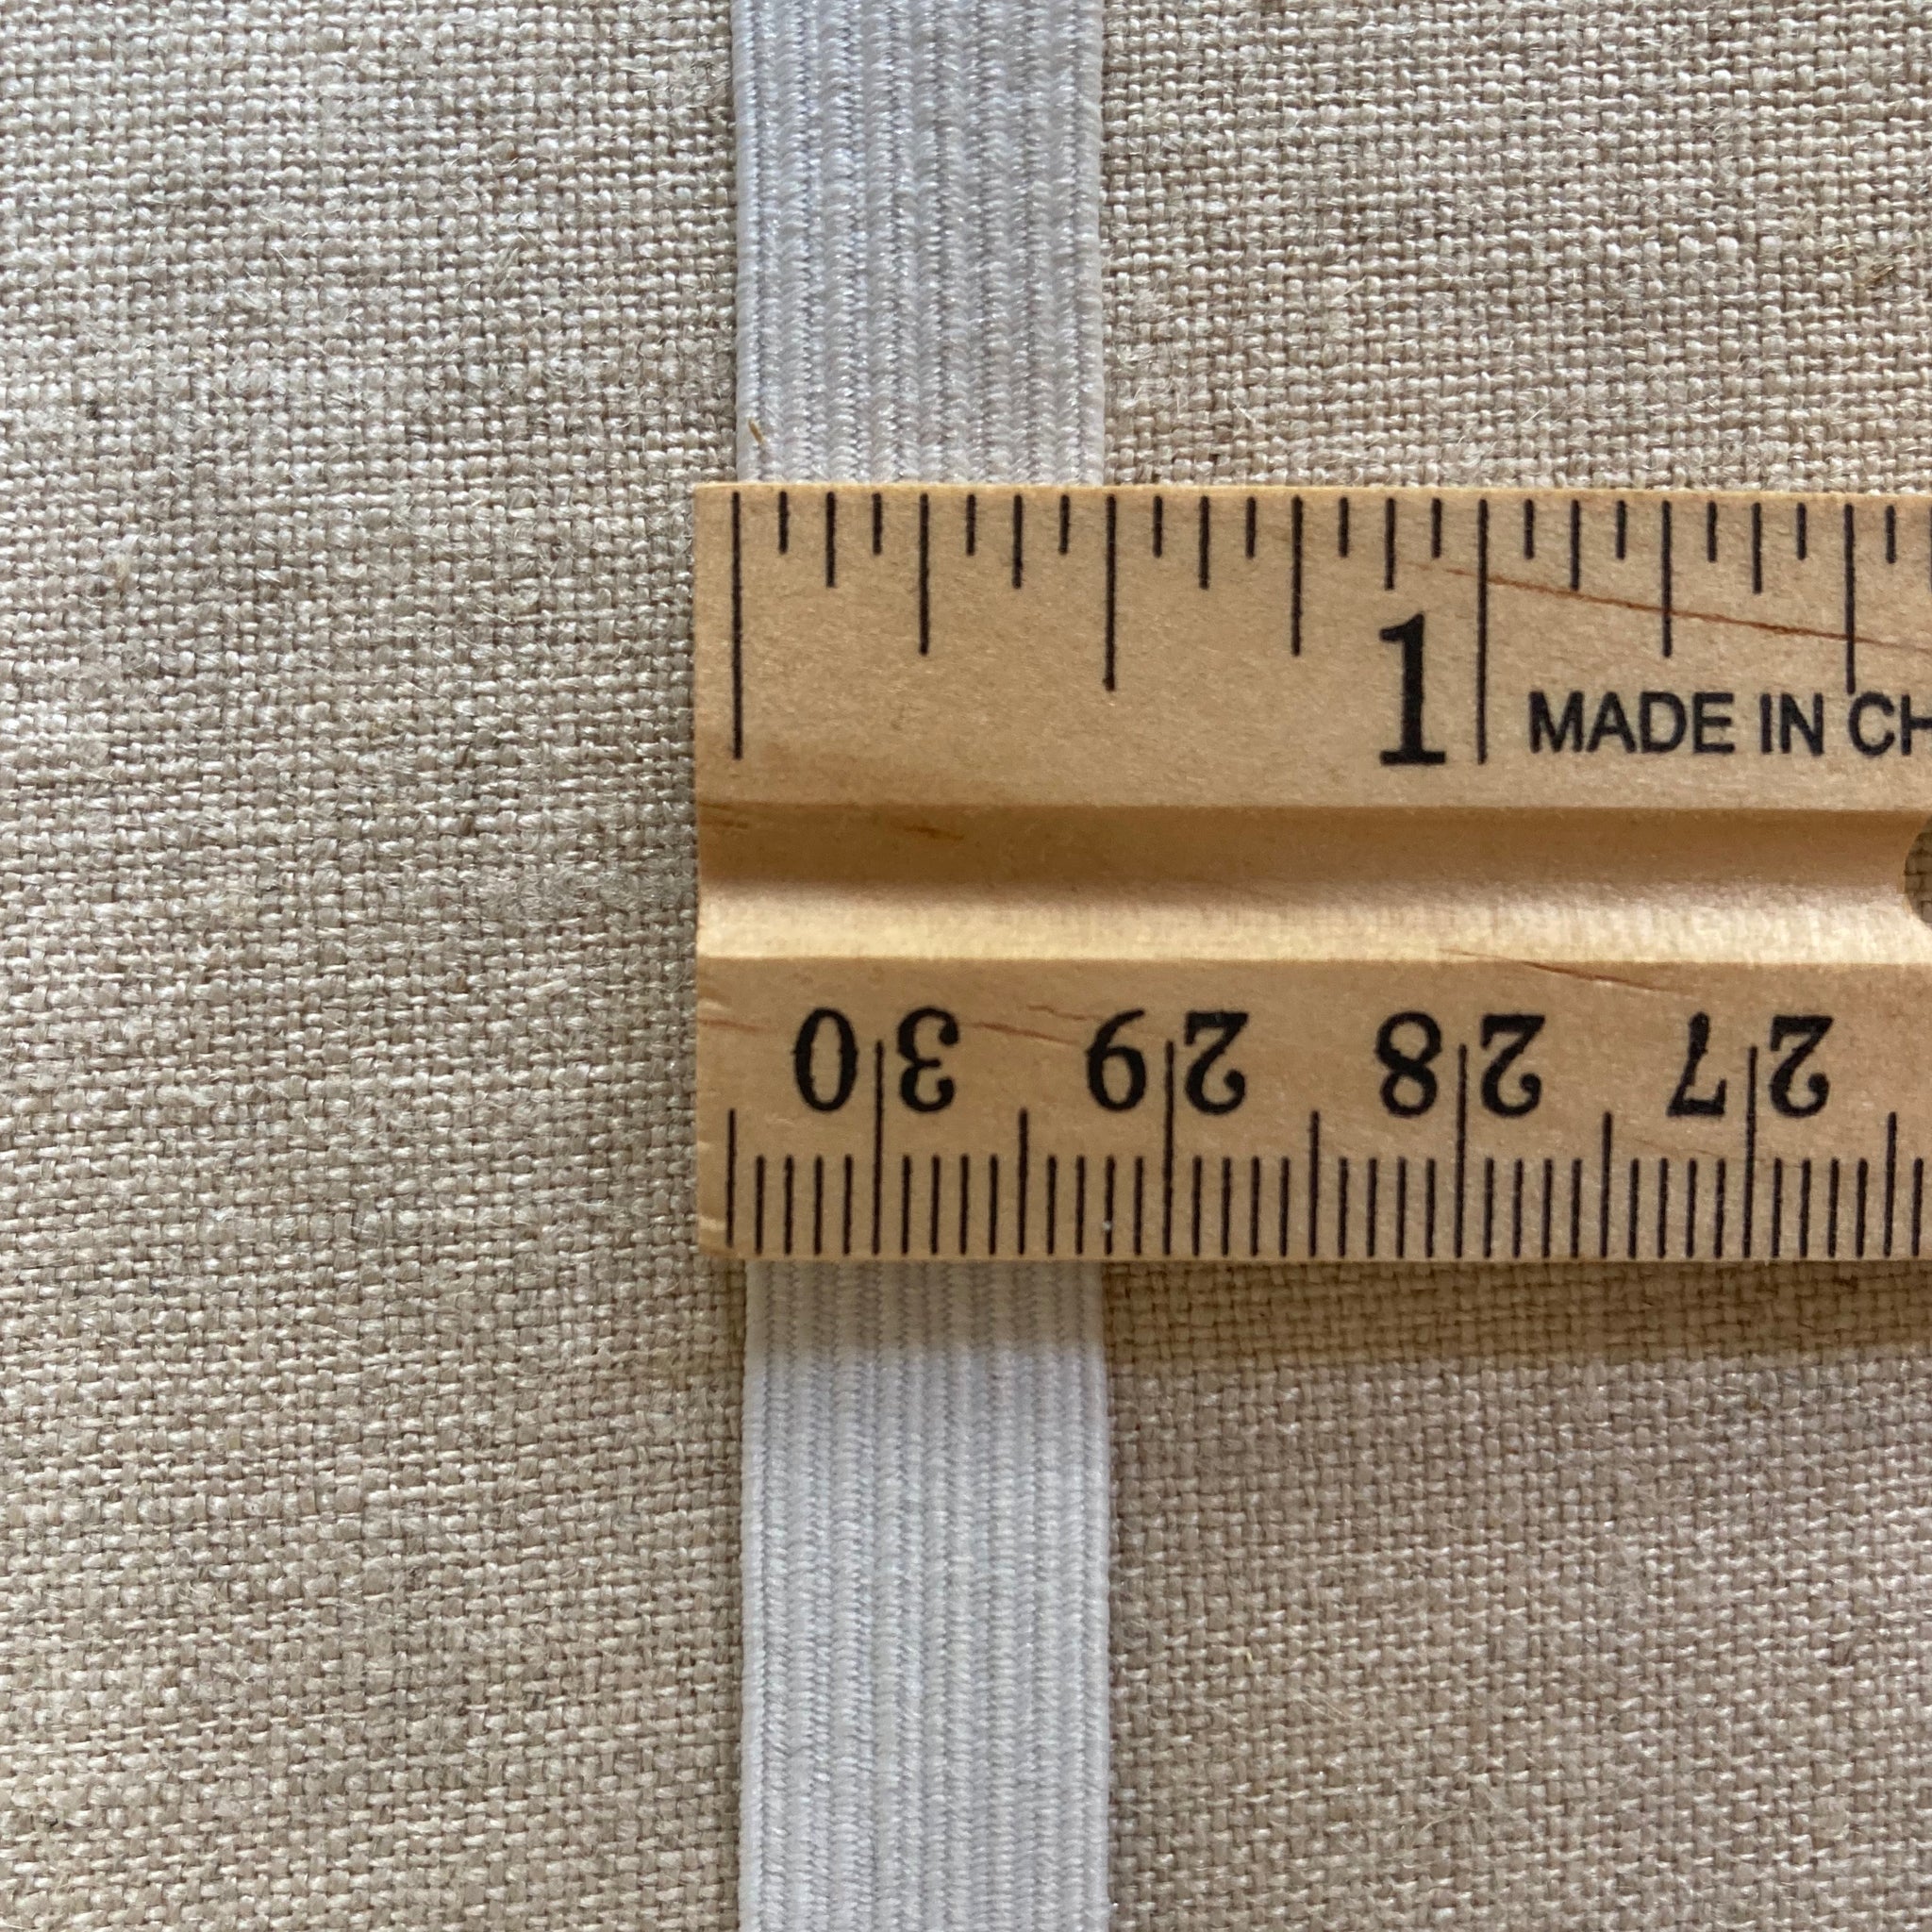 Braided Elastic 1/2 Wide - 1 meter – Sewing Kit Supply